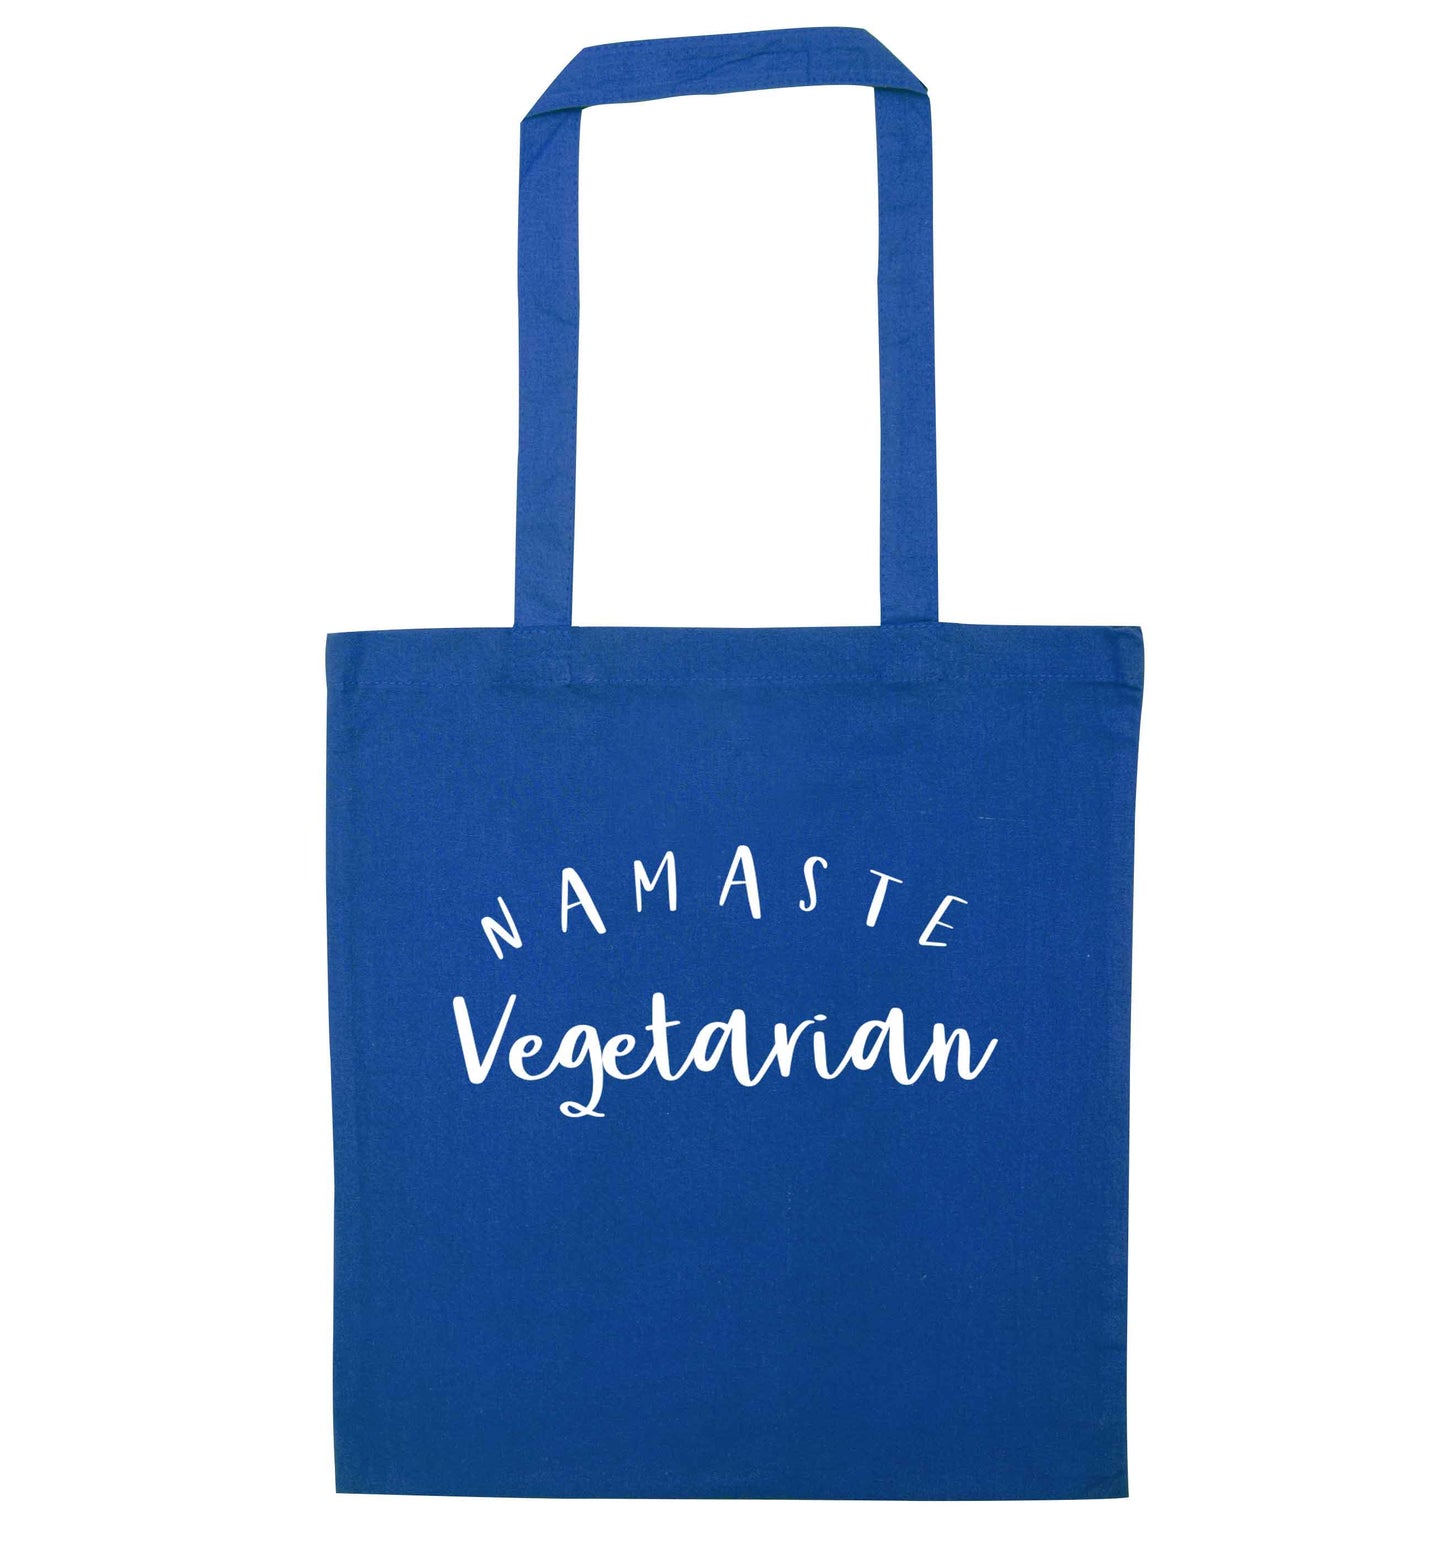 Namaste vegetarian blue tote bag